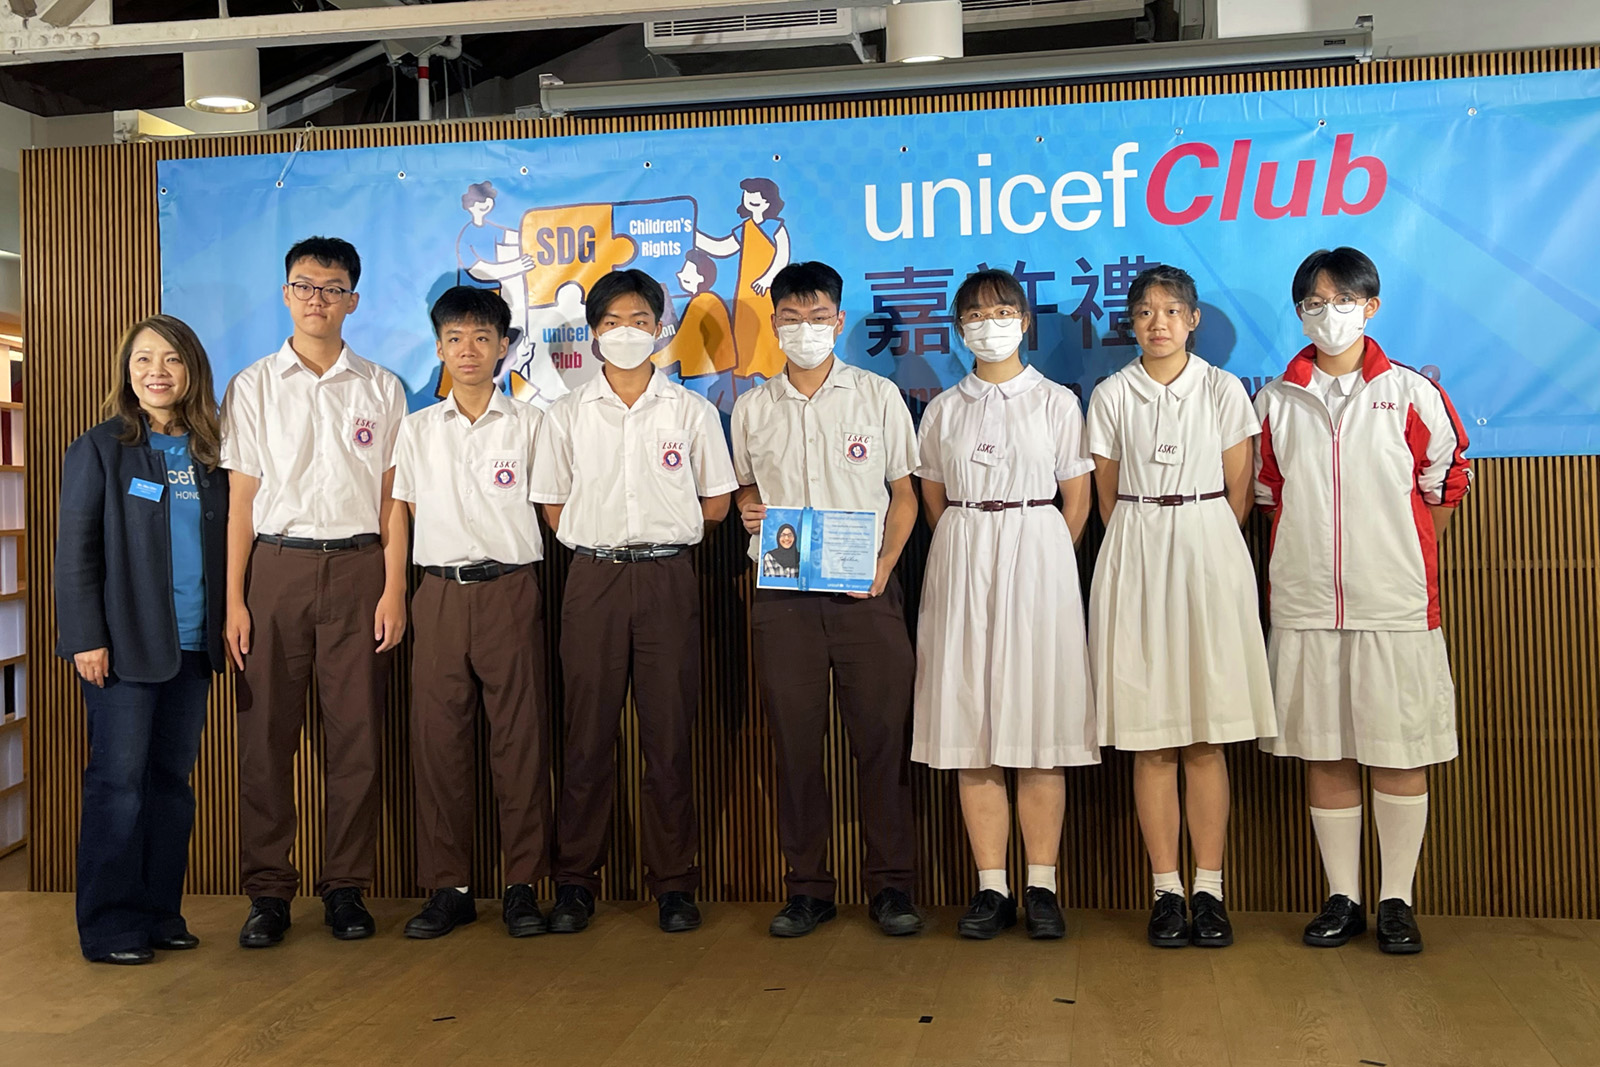 Unicef club HK「兒童權利和公平貿易」嘉許禮